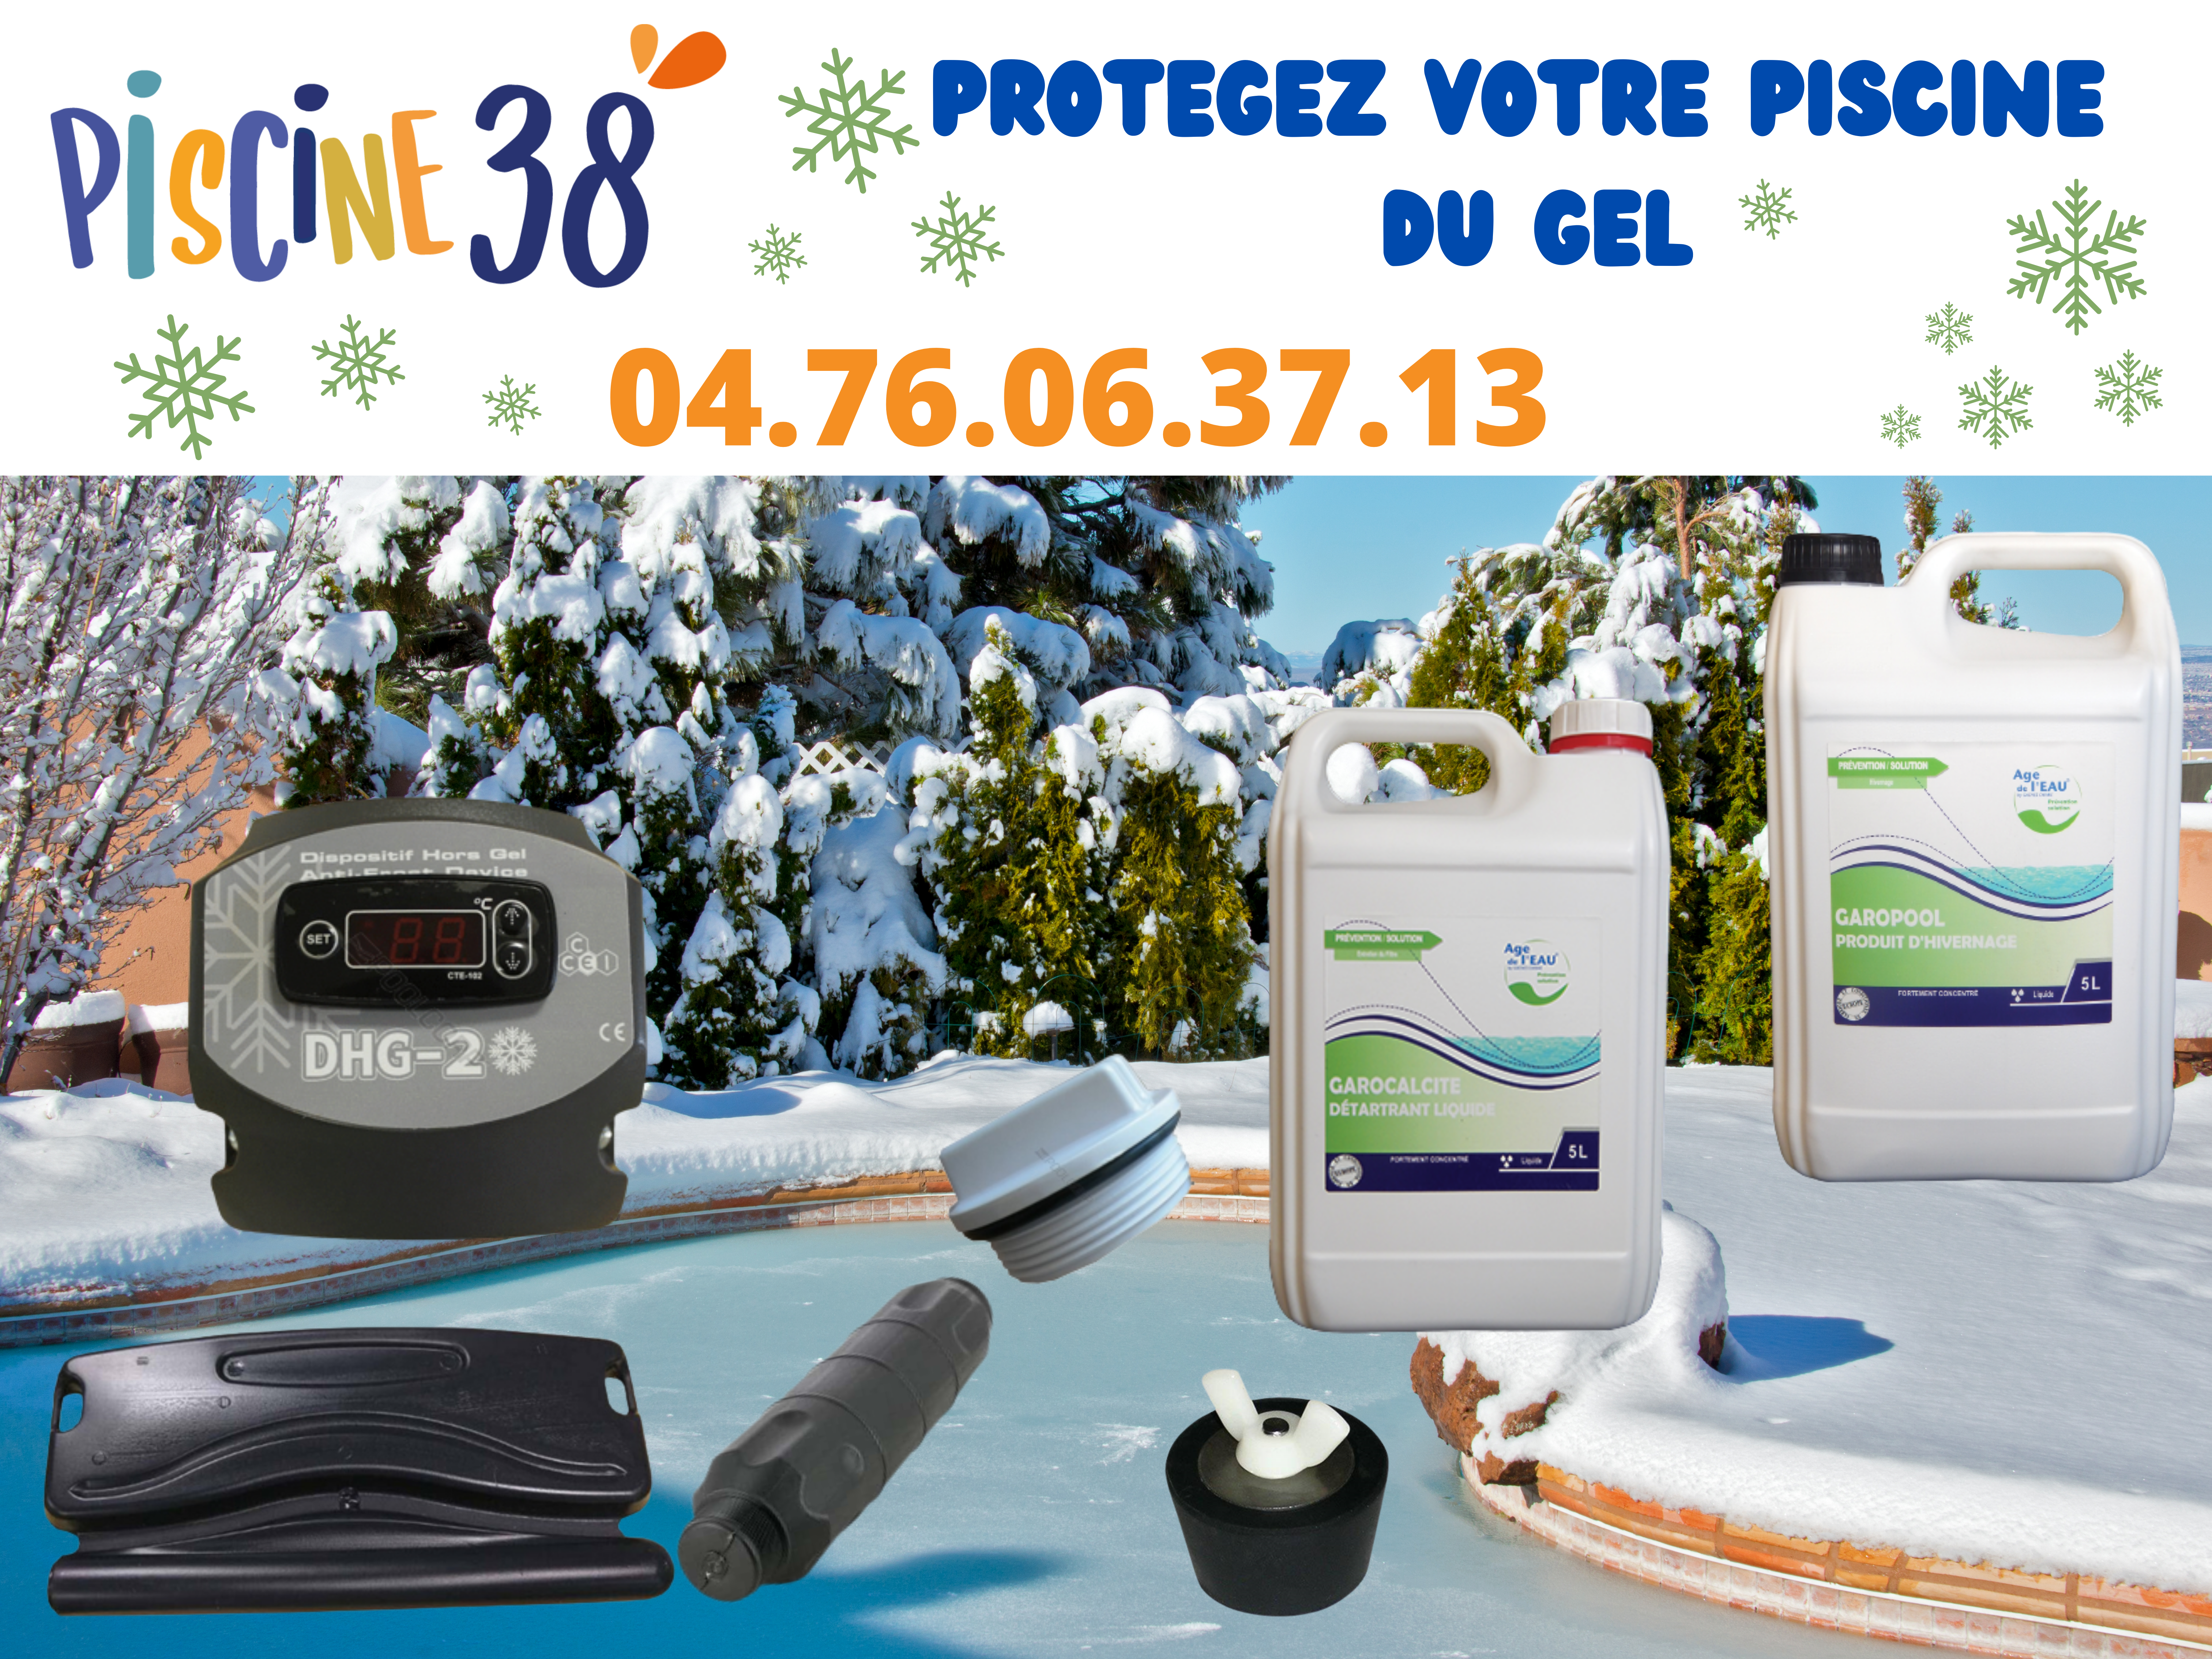 Hivernez votre piscine avec notre gamme de produit chez Piscine 38.